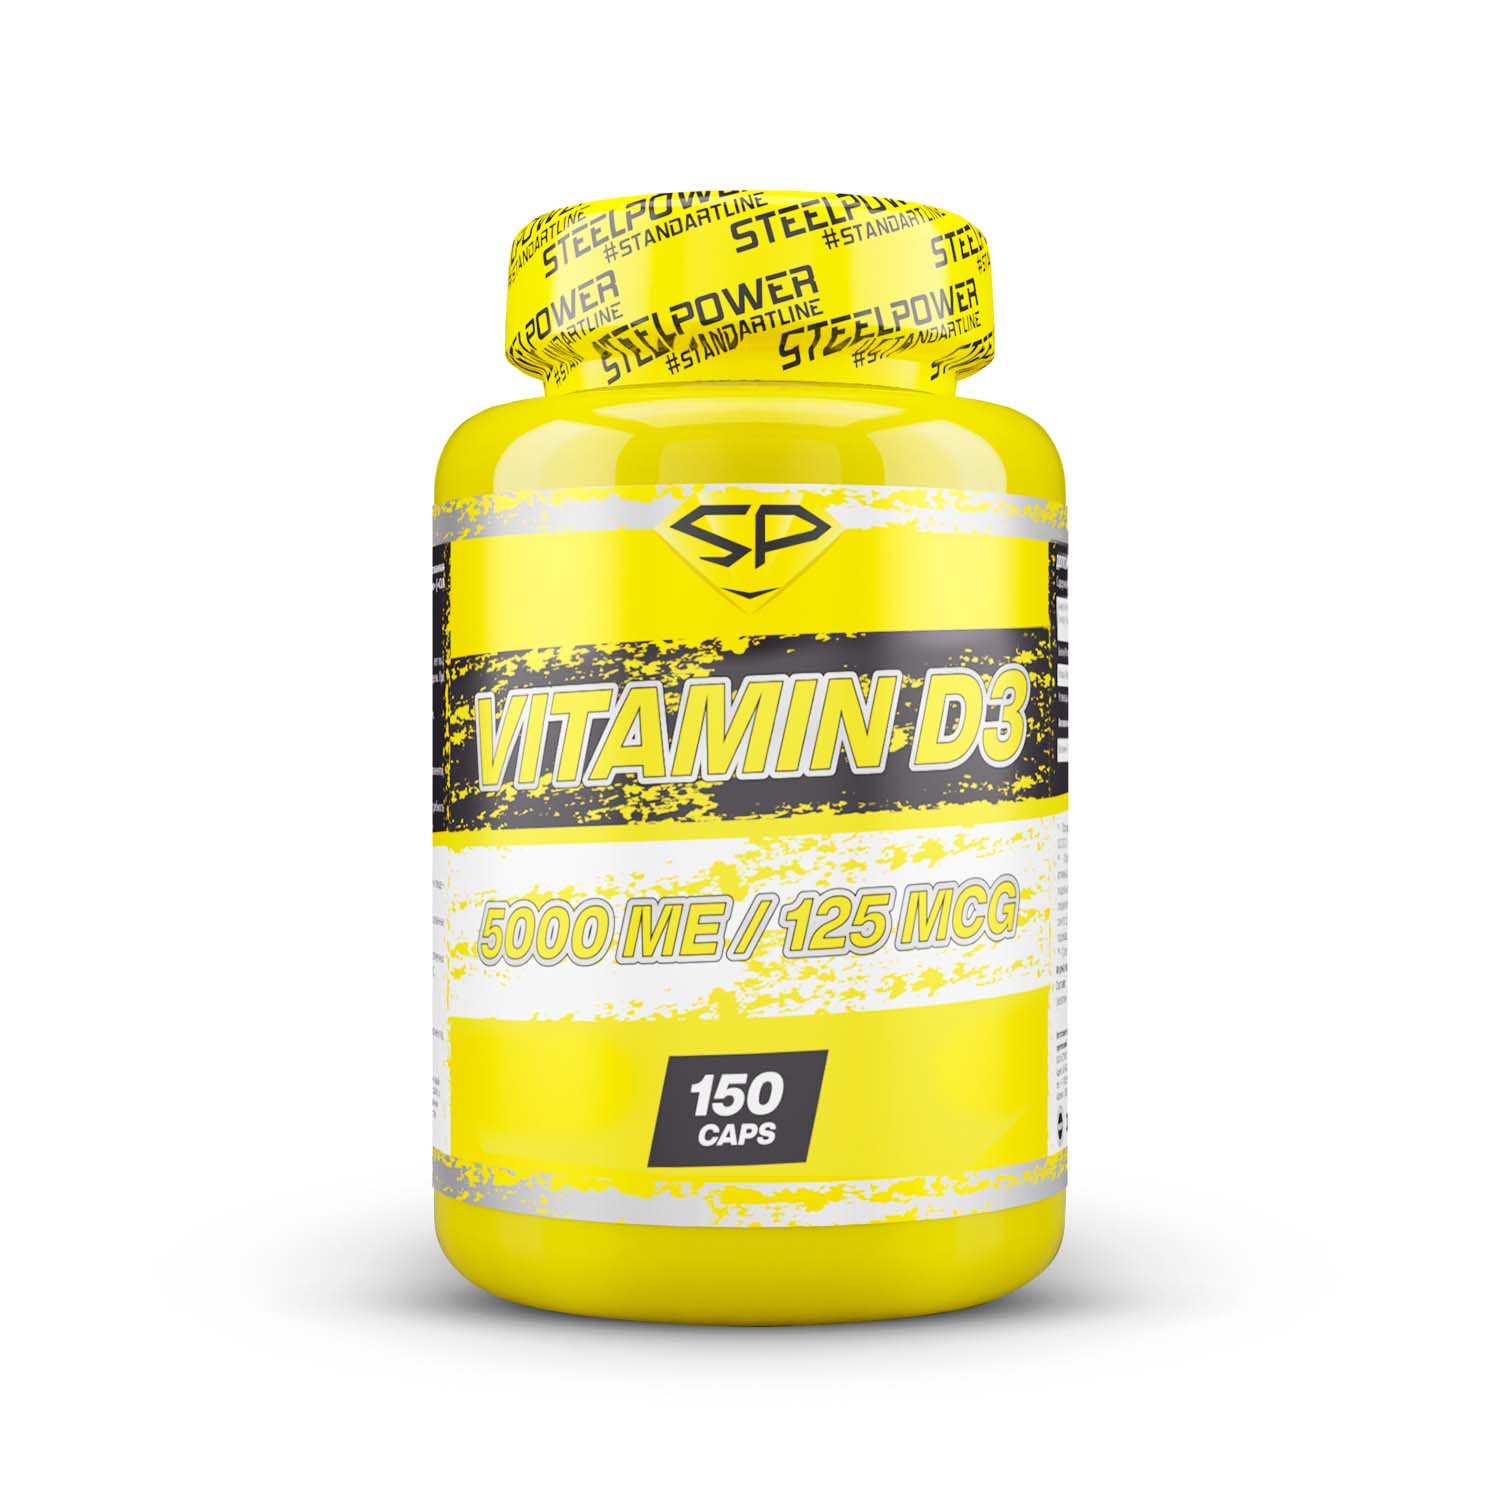 Витамин Д3, Steel Power ,Vitamin D-3 5000 ME, 150 капсул